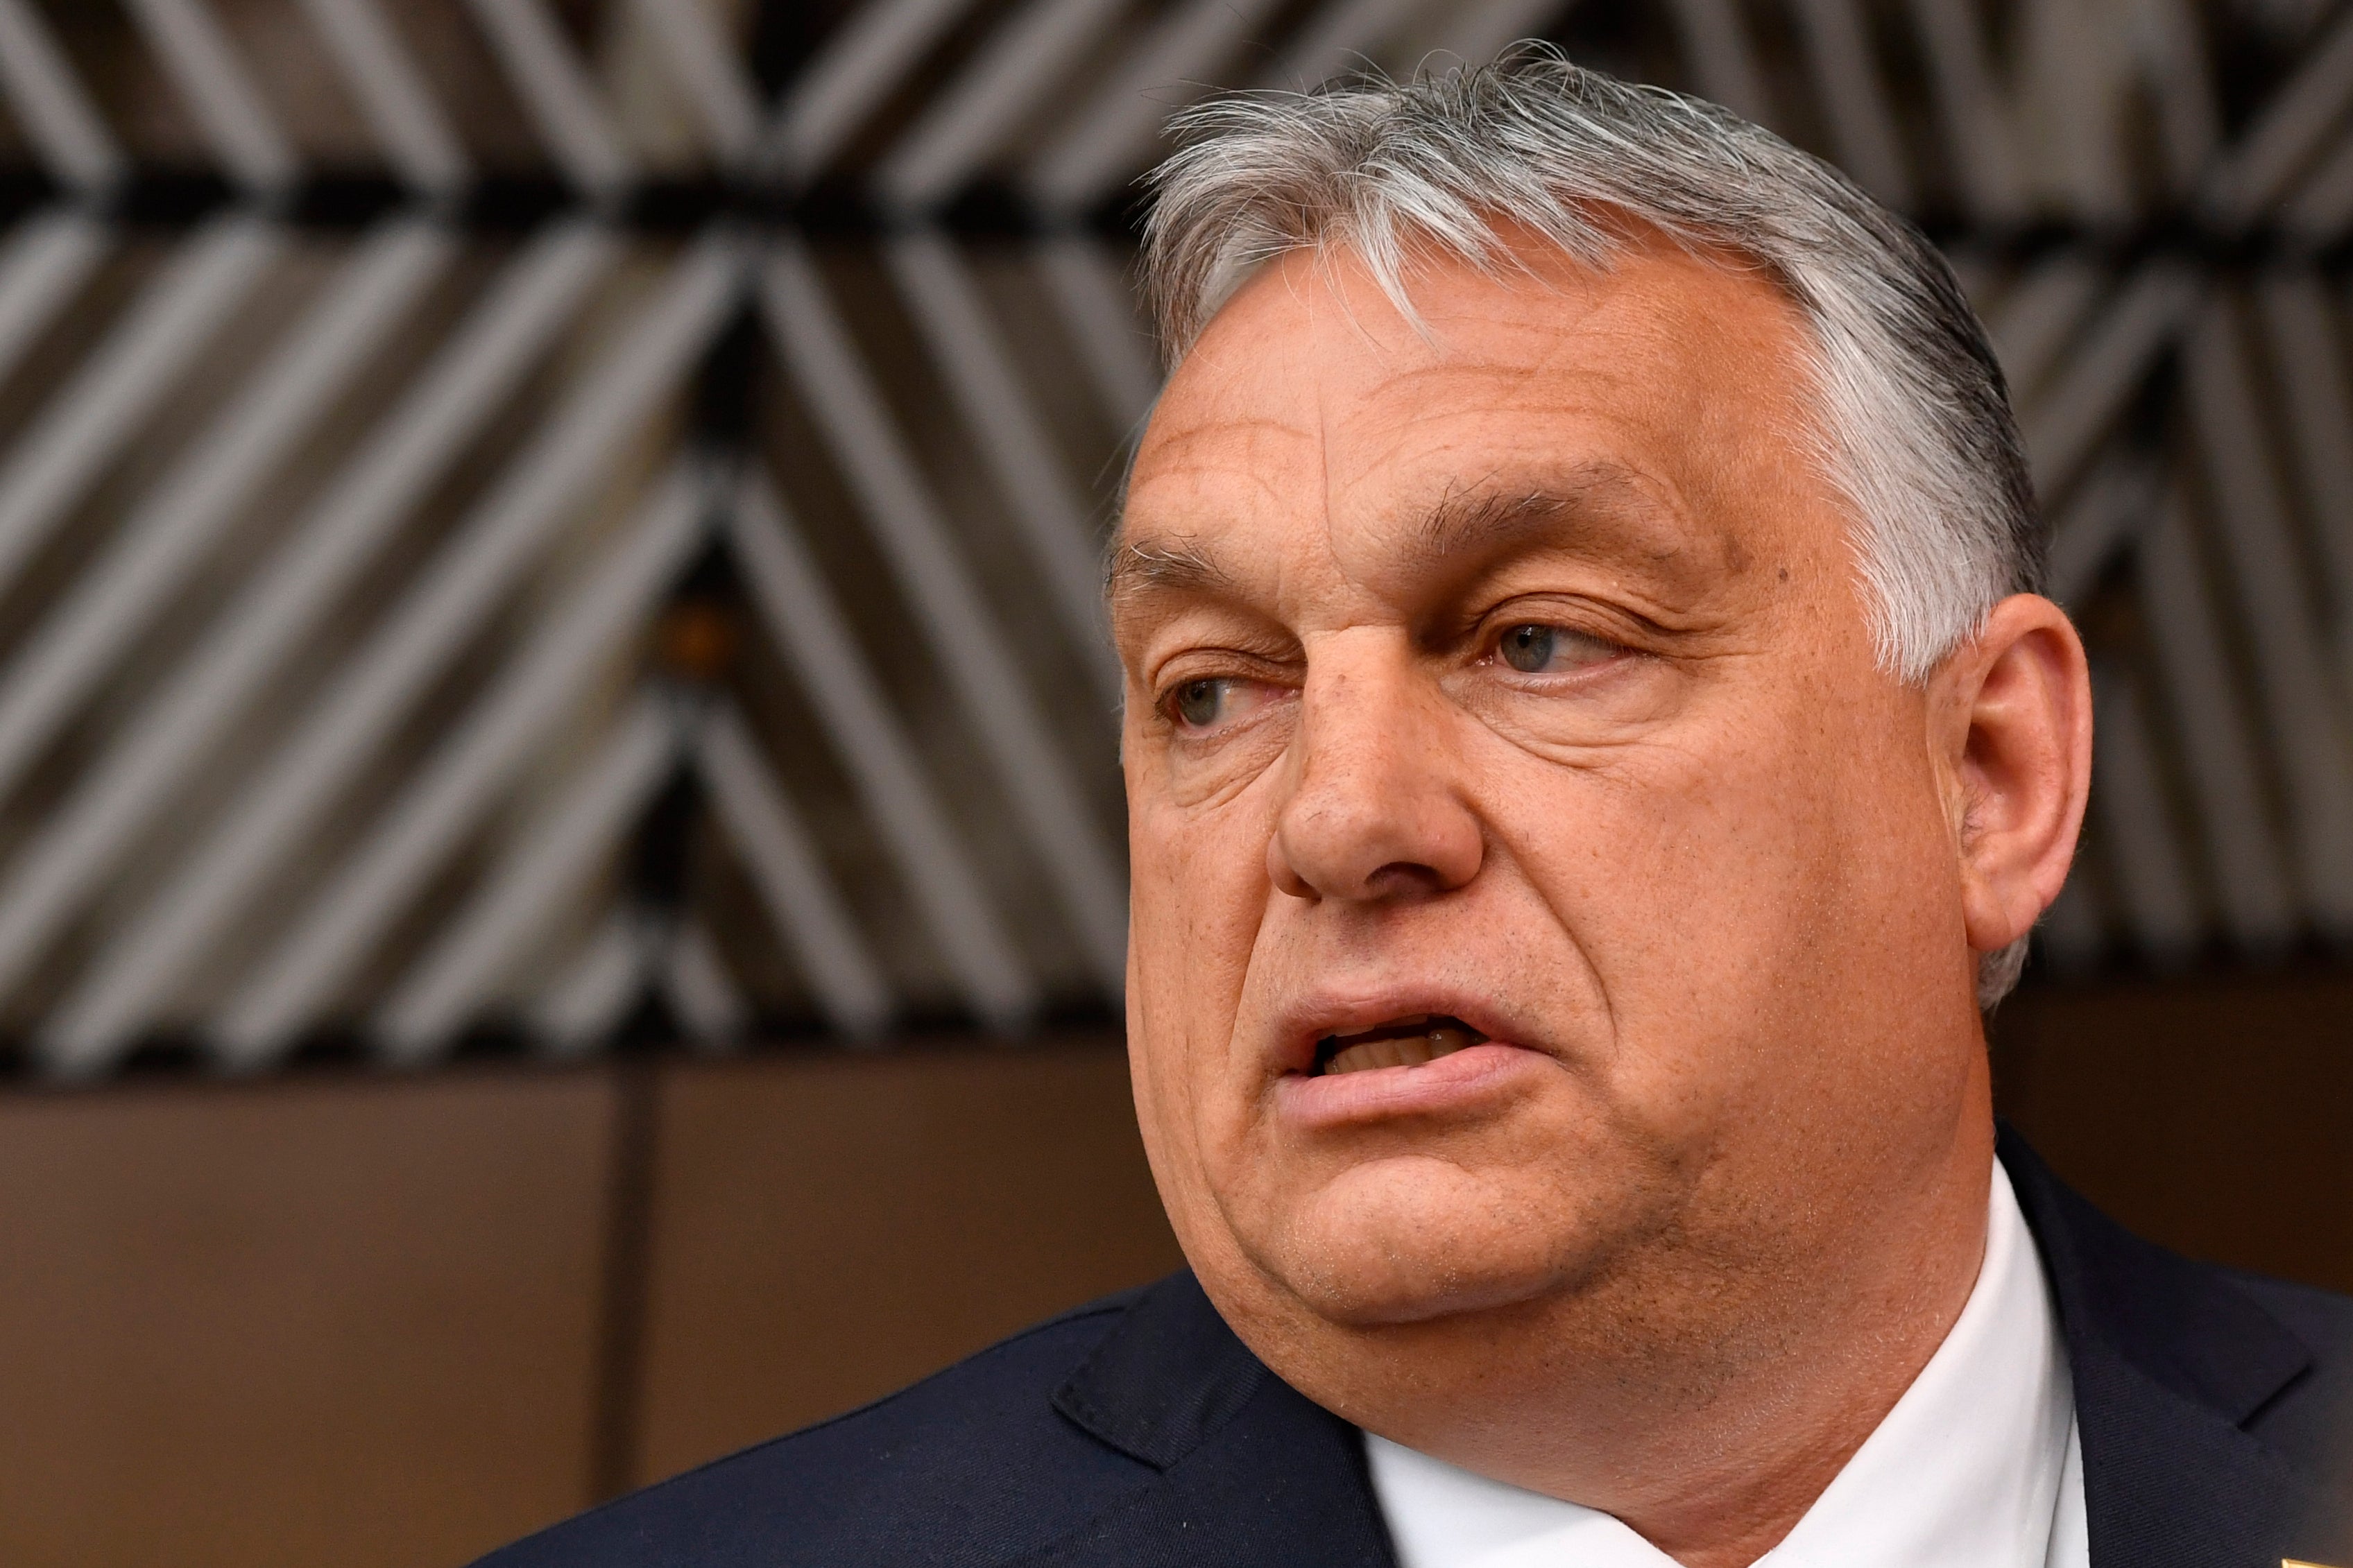 Hungarian prime minister Viktor Orban